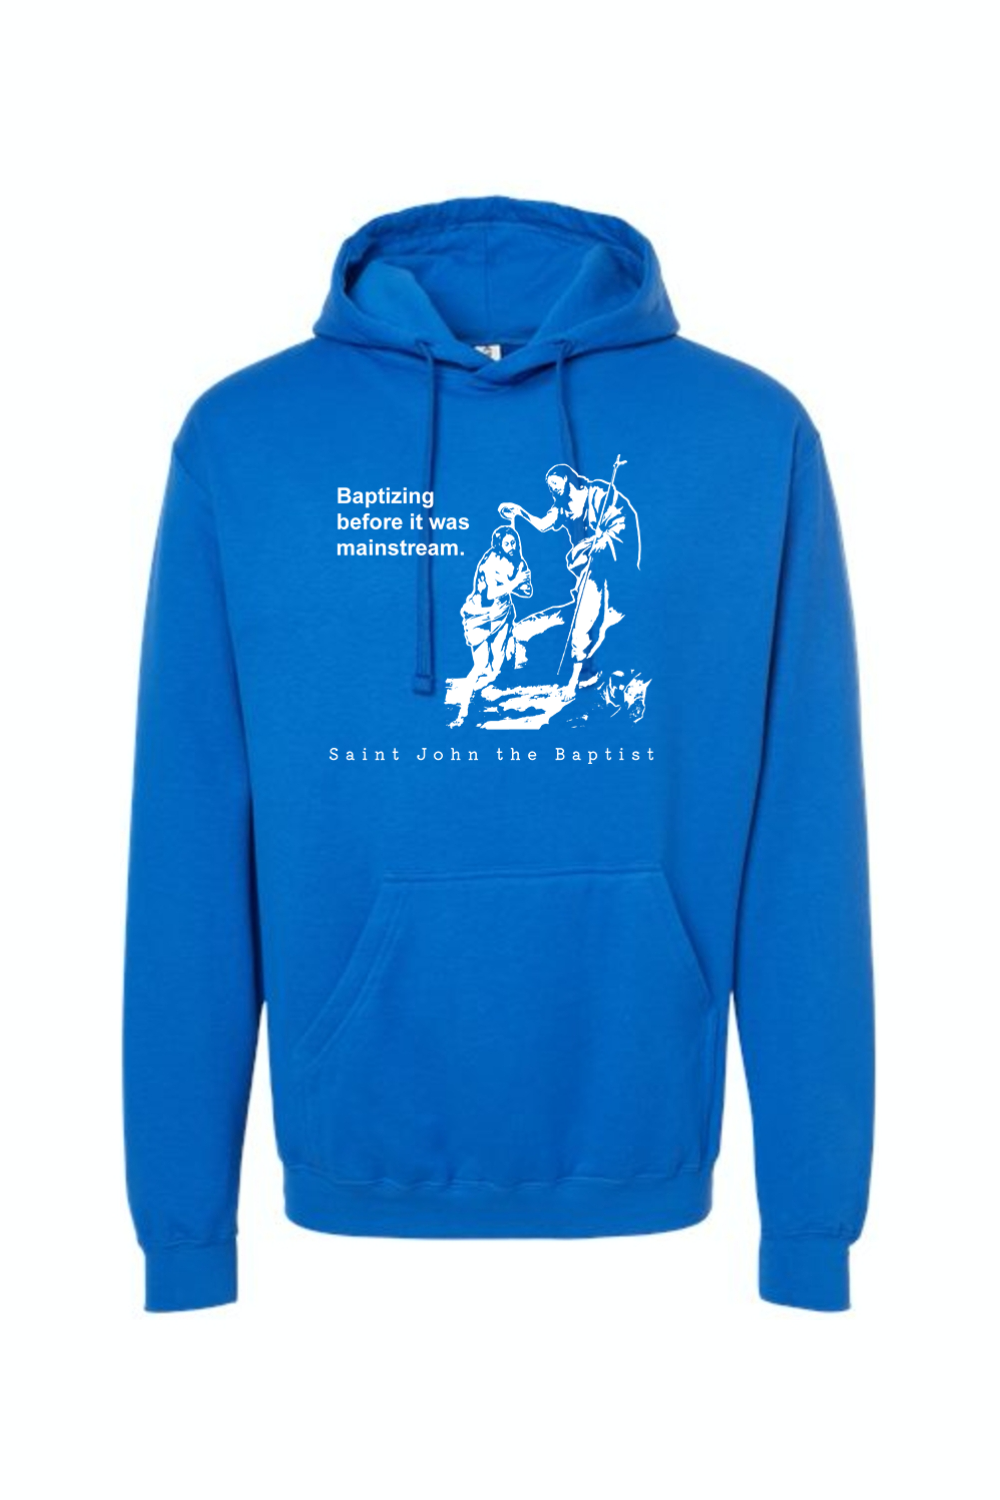 Mainstream - St. John the Baptist Hoodie Sweatshirt